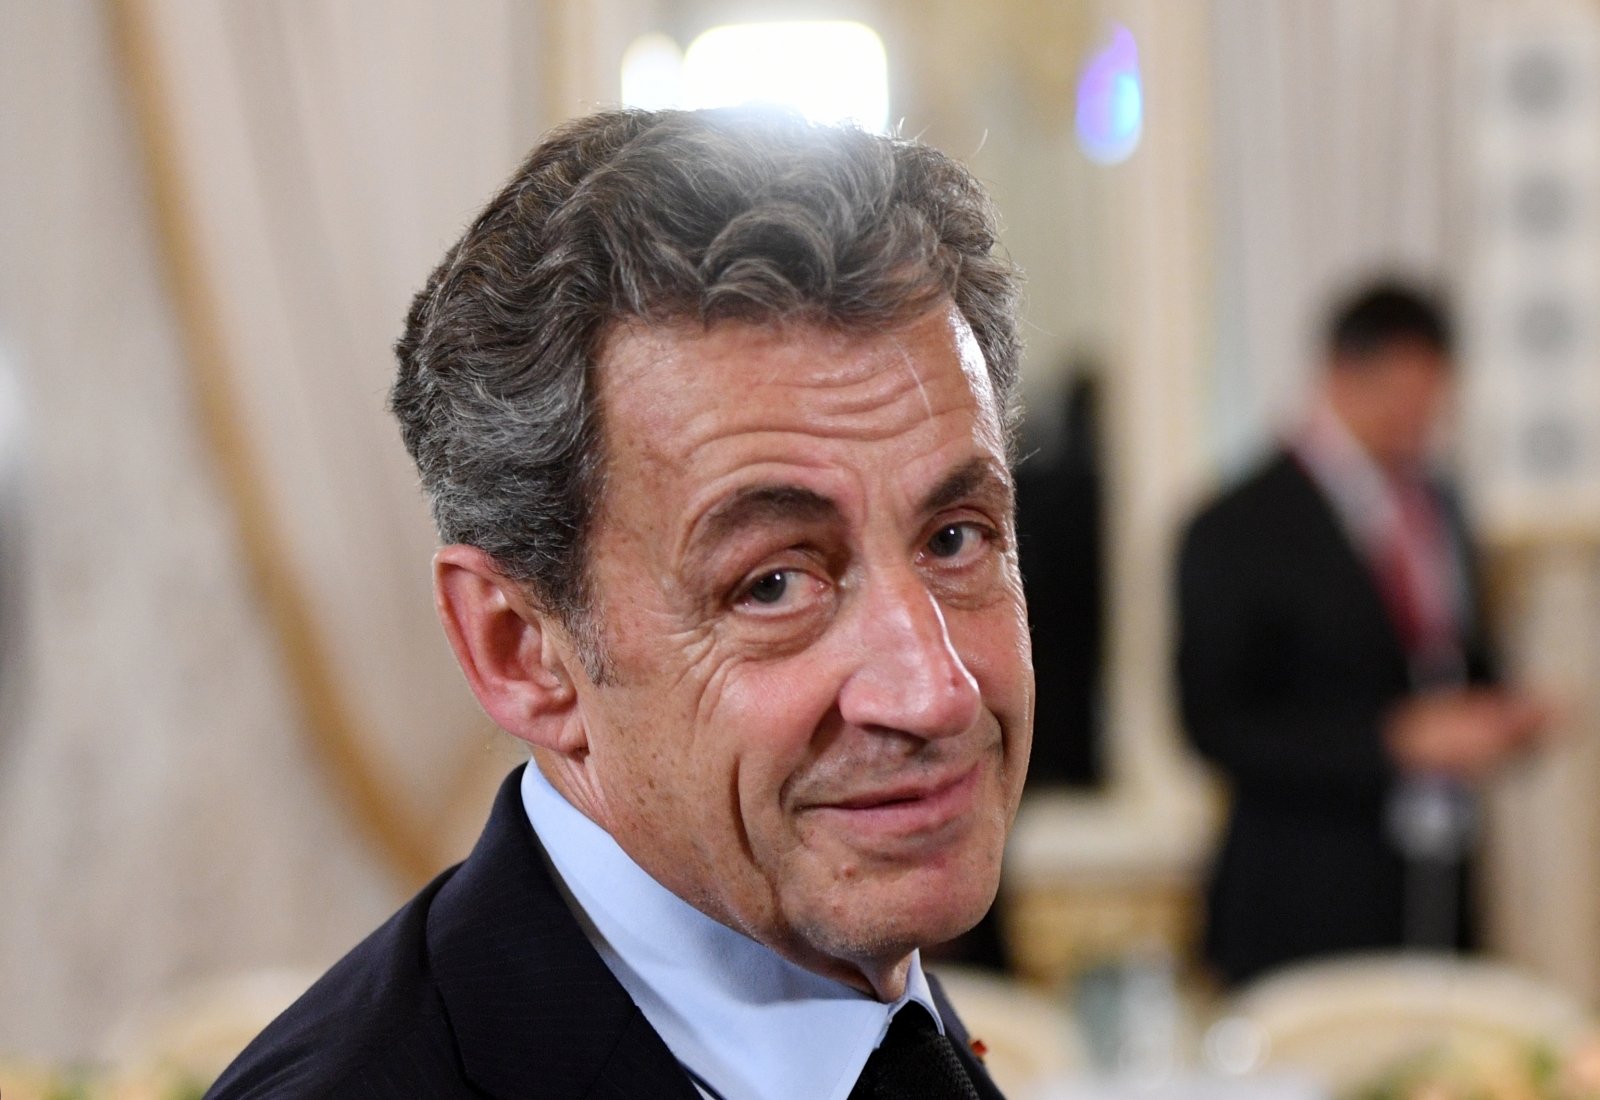 BFM TV: осуждённый за коррупцию Саркози вновь предстанет перед судом